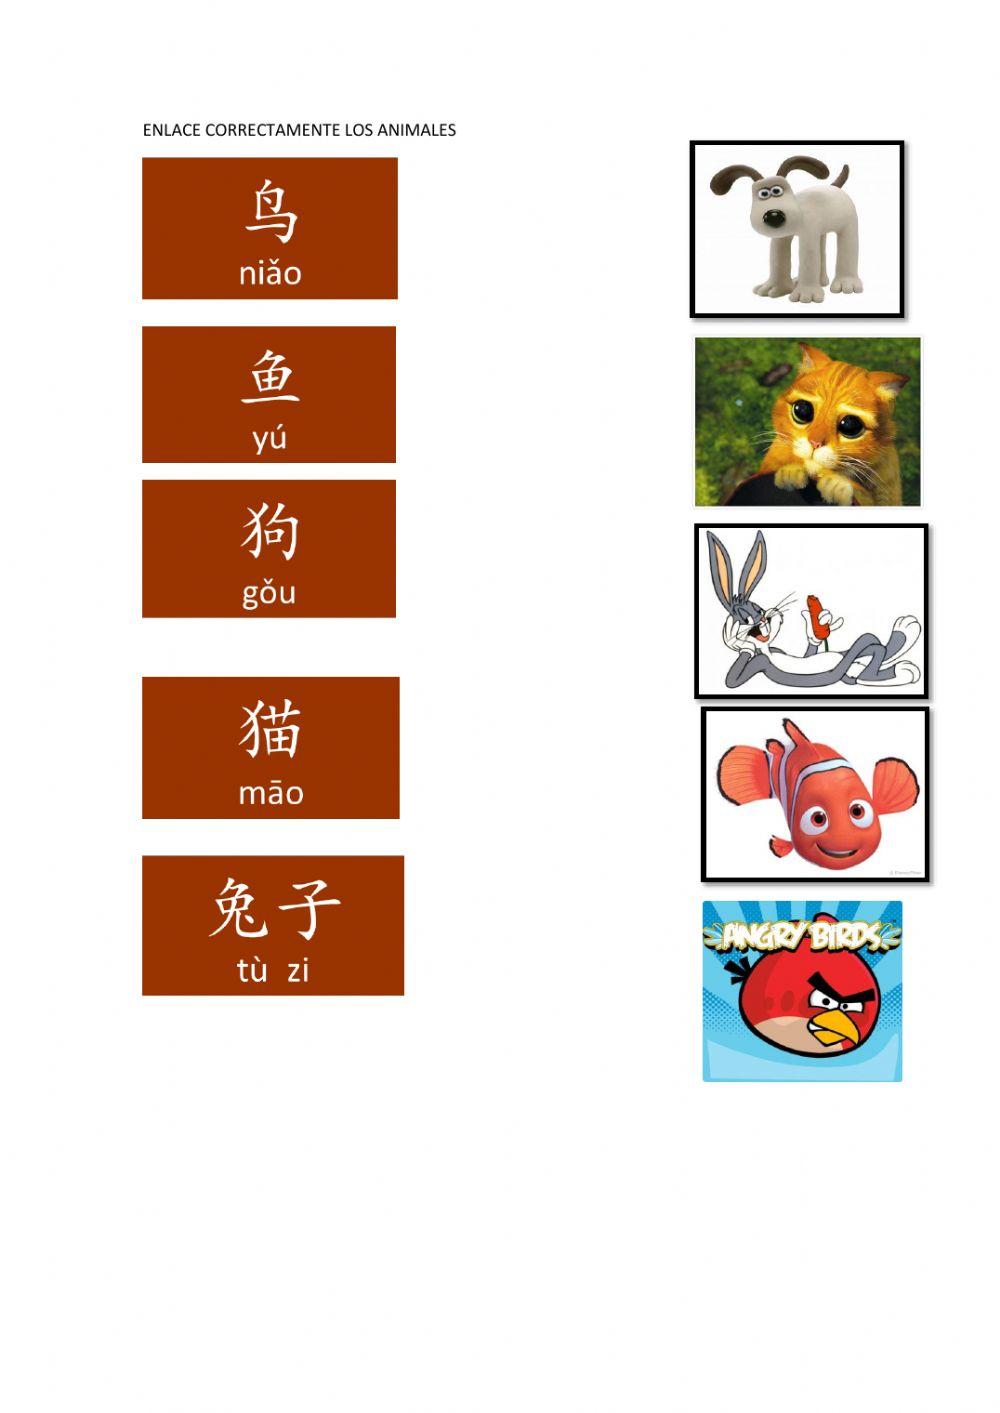 我学习汉语 animales chino